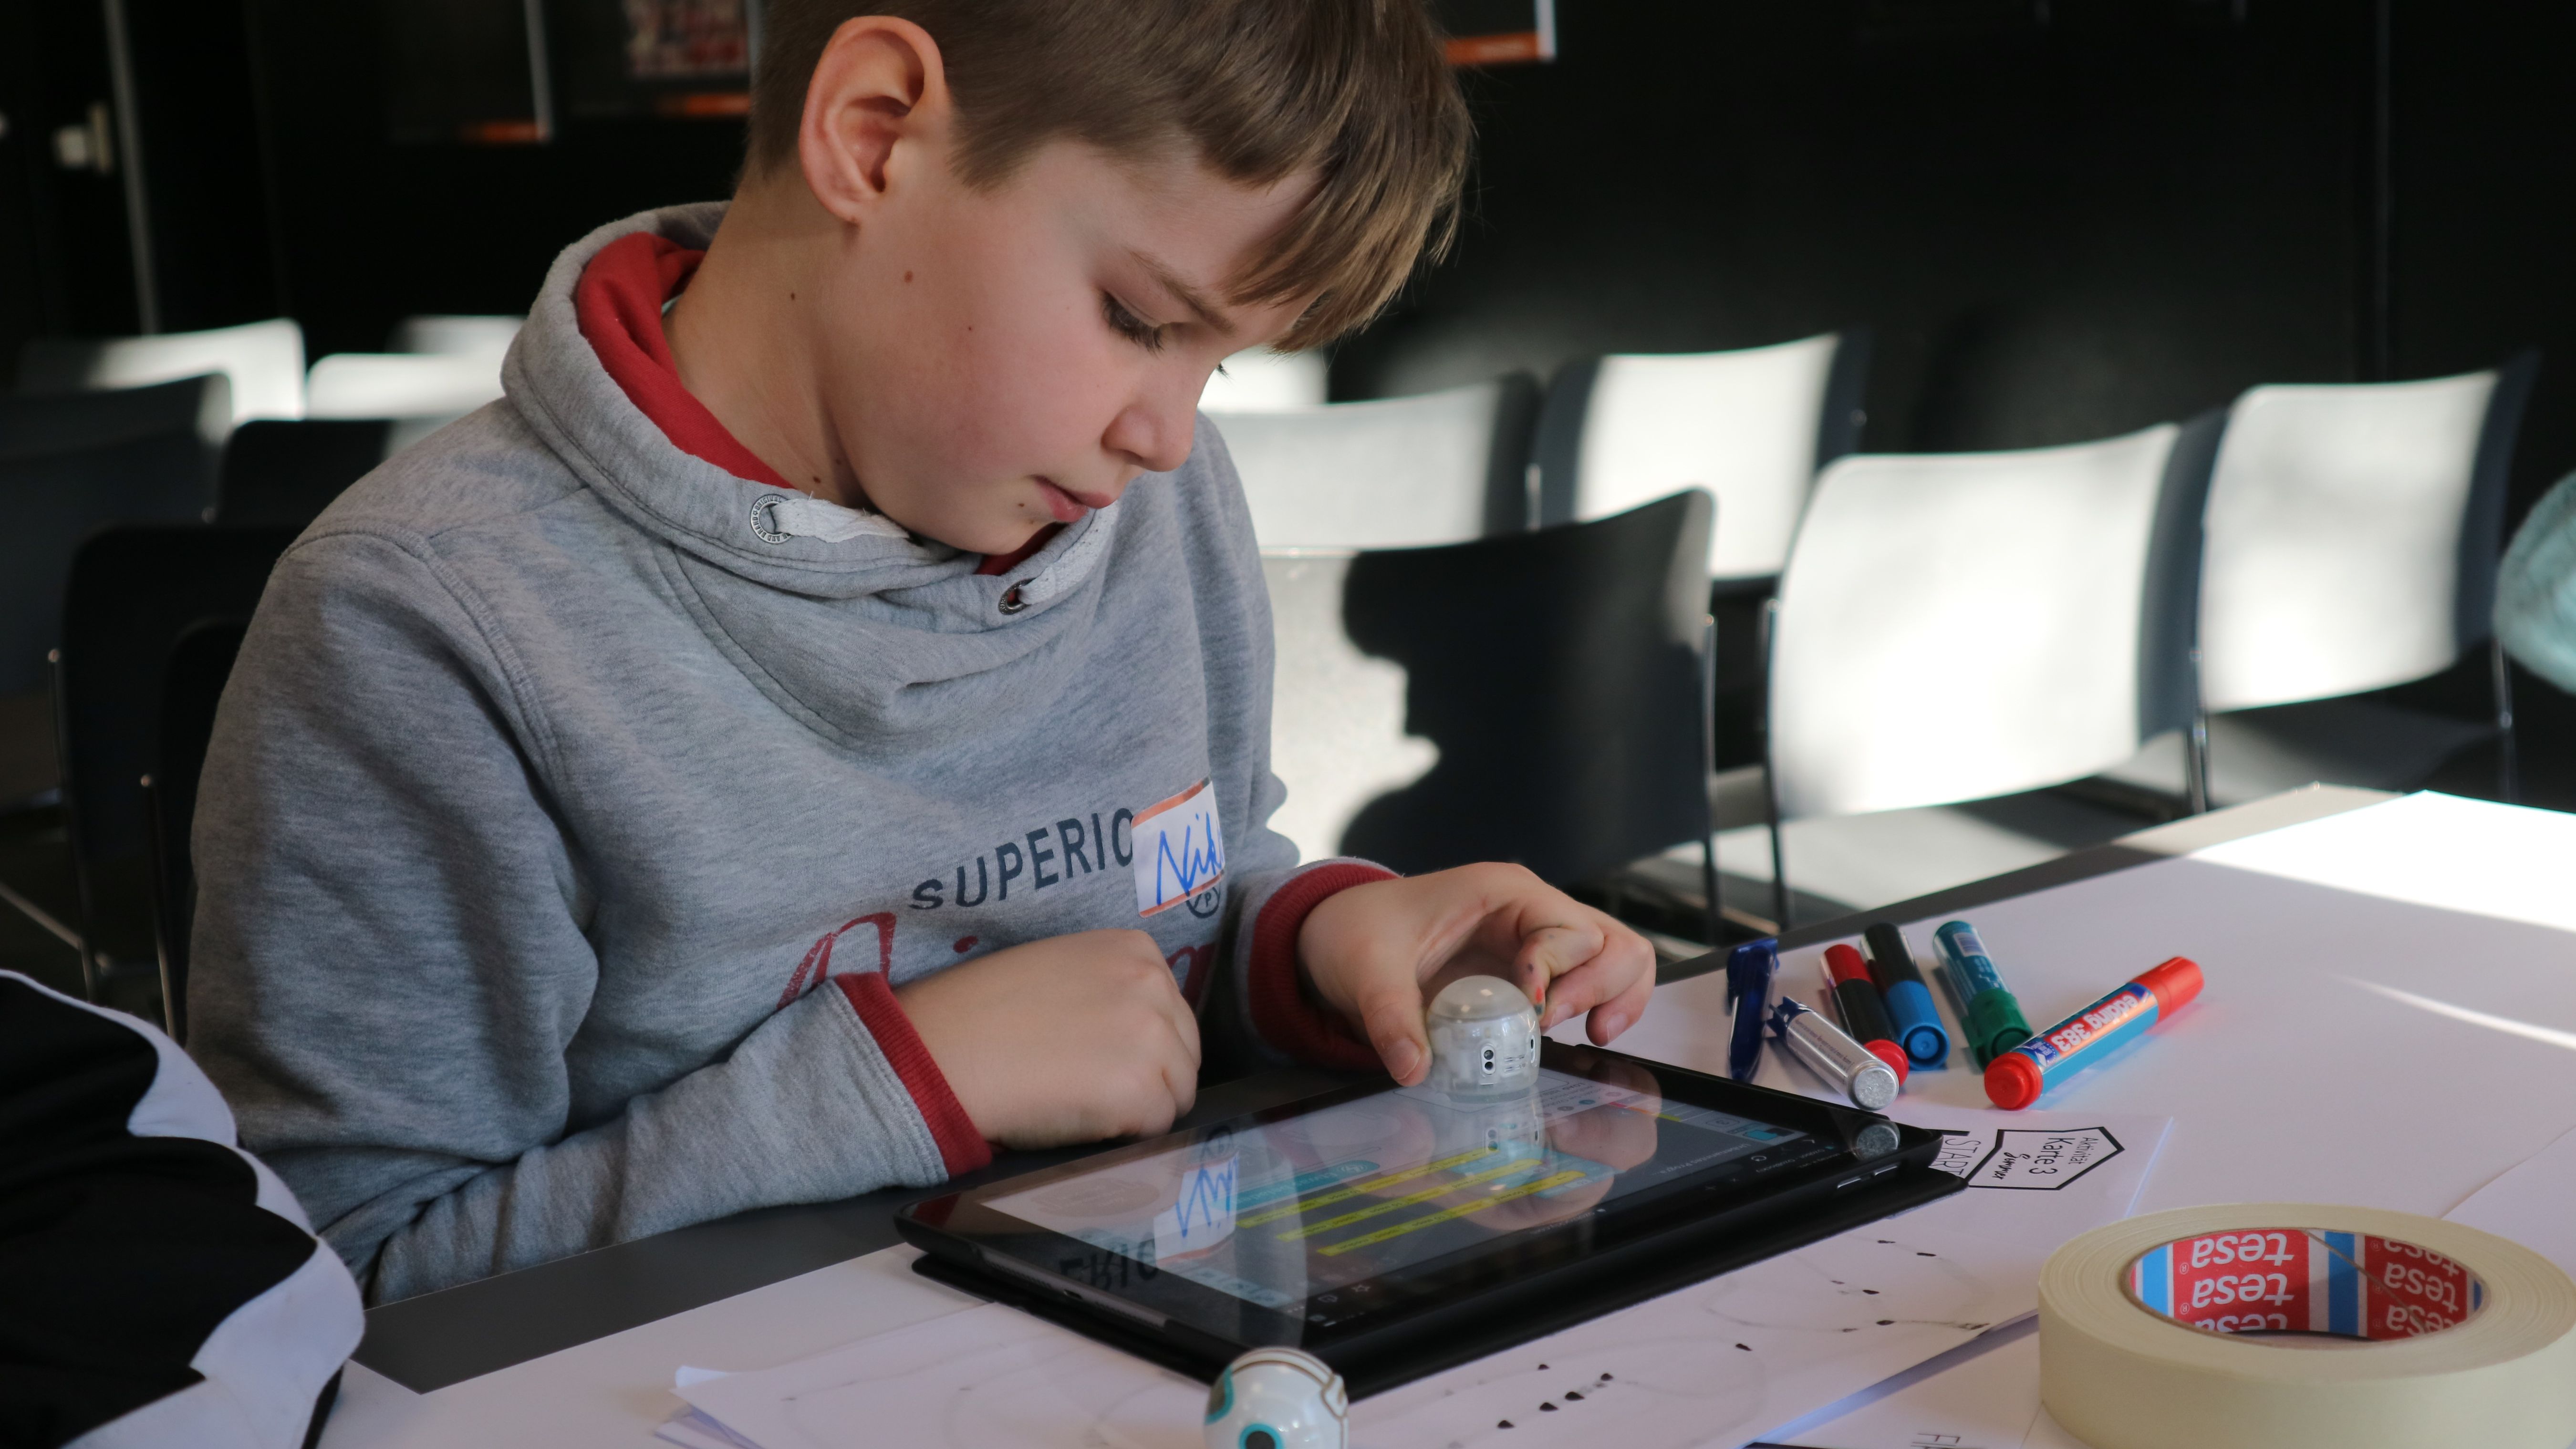 Junge programmiert kleinen Roboter mit dem Tablet